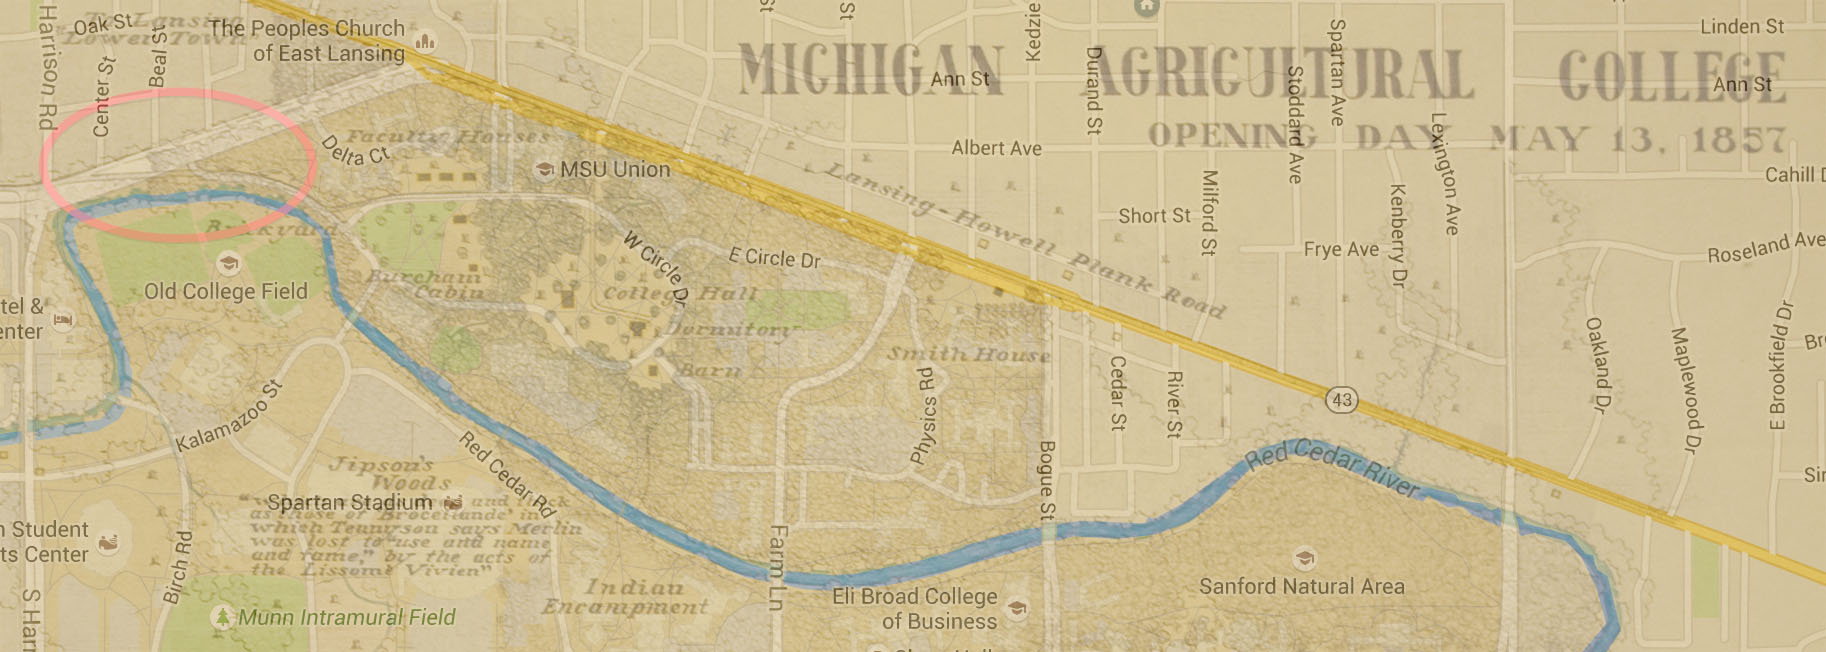 密歇根州-农业-大学-地图- 1857